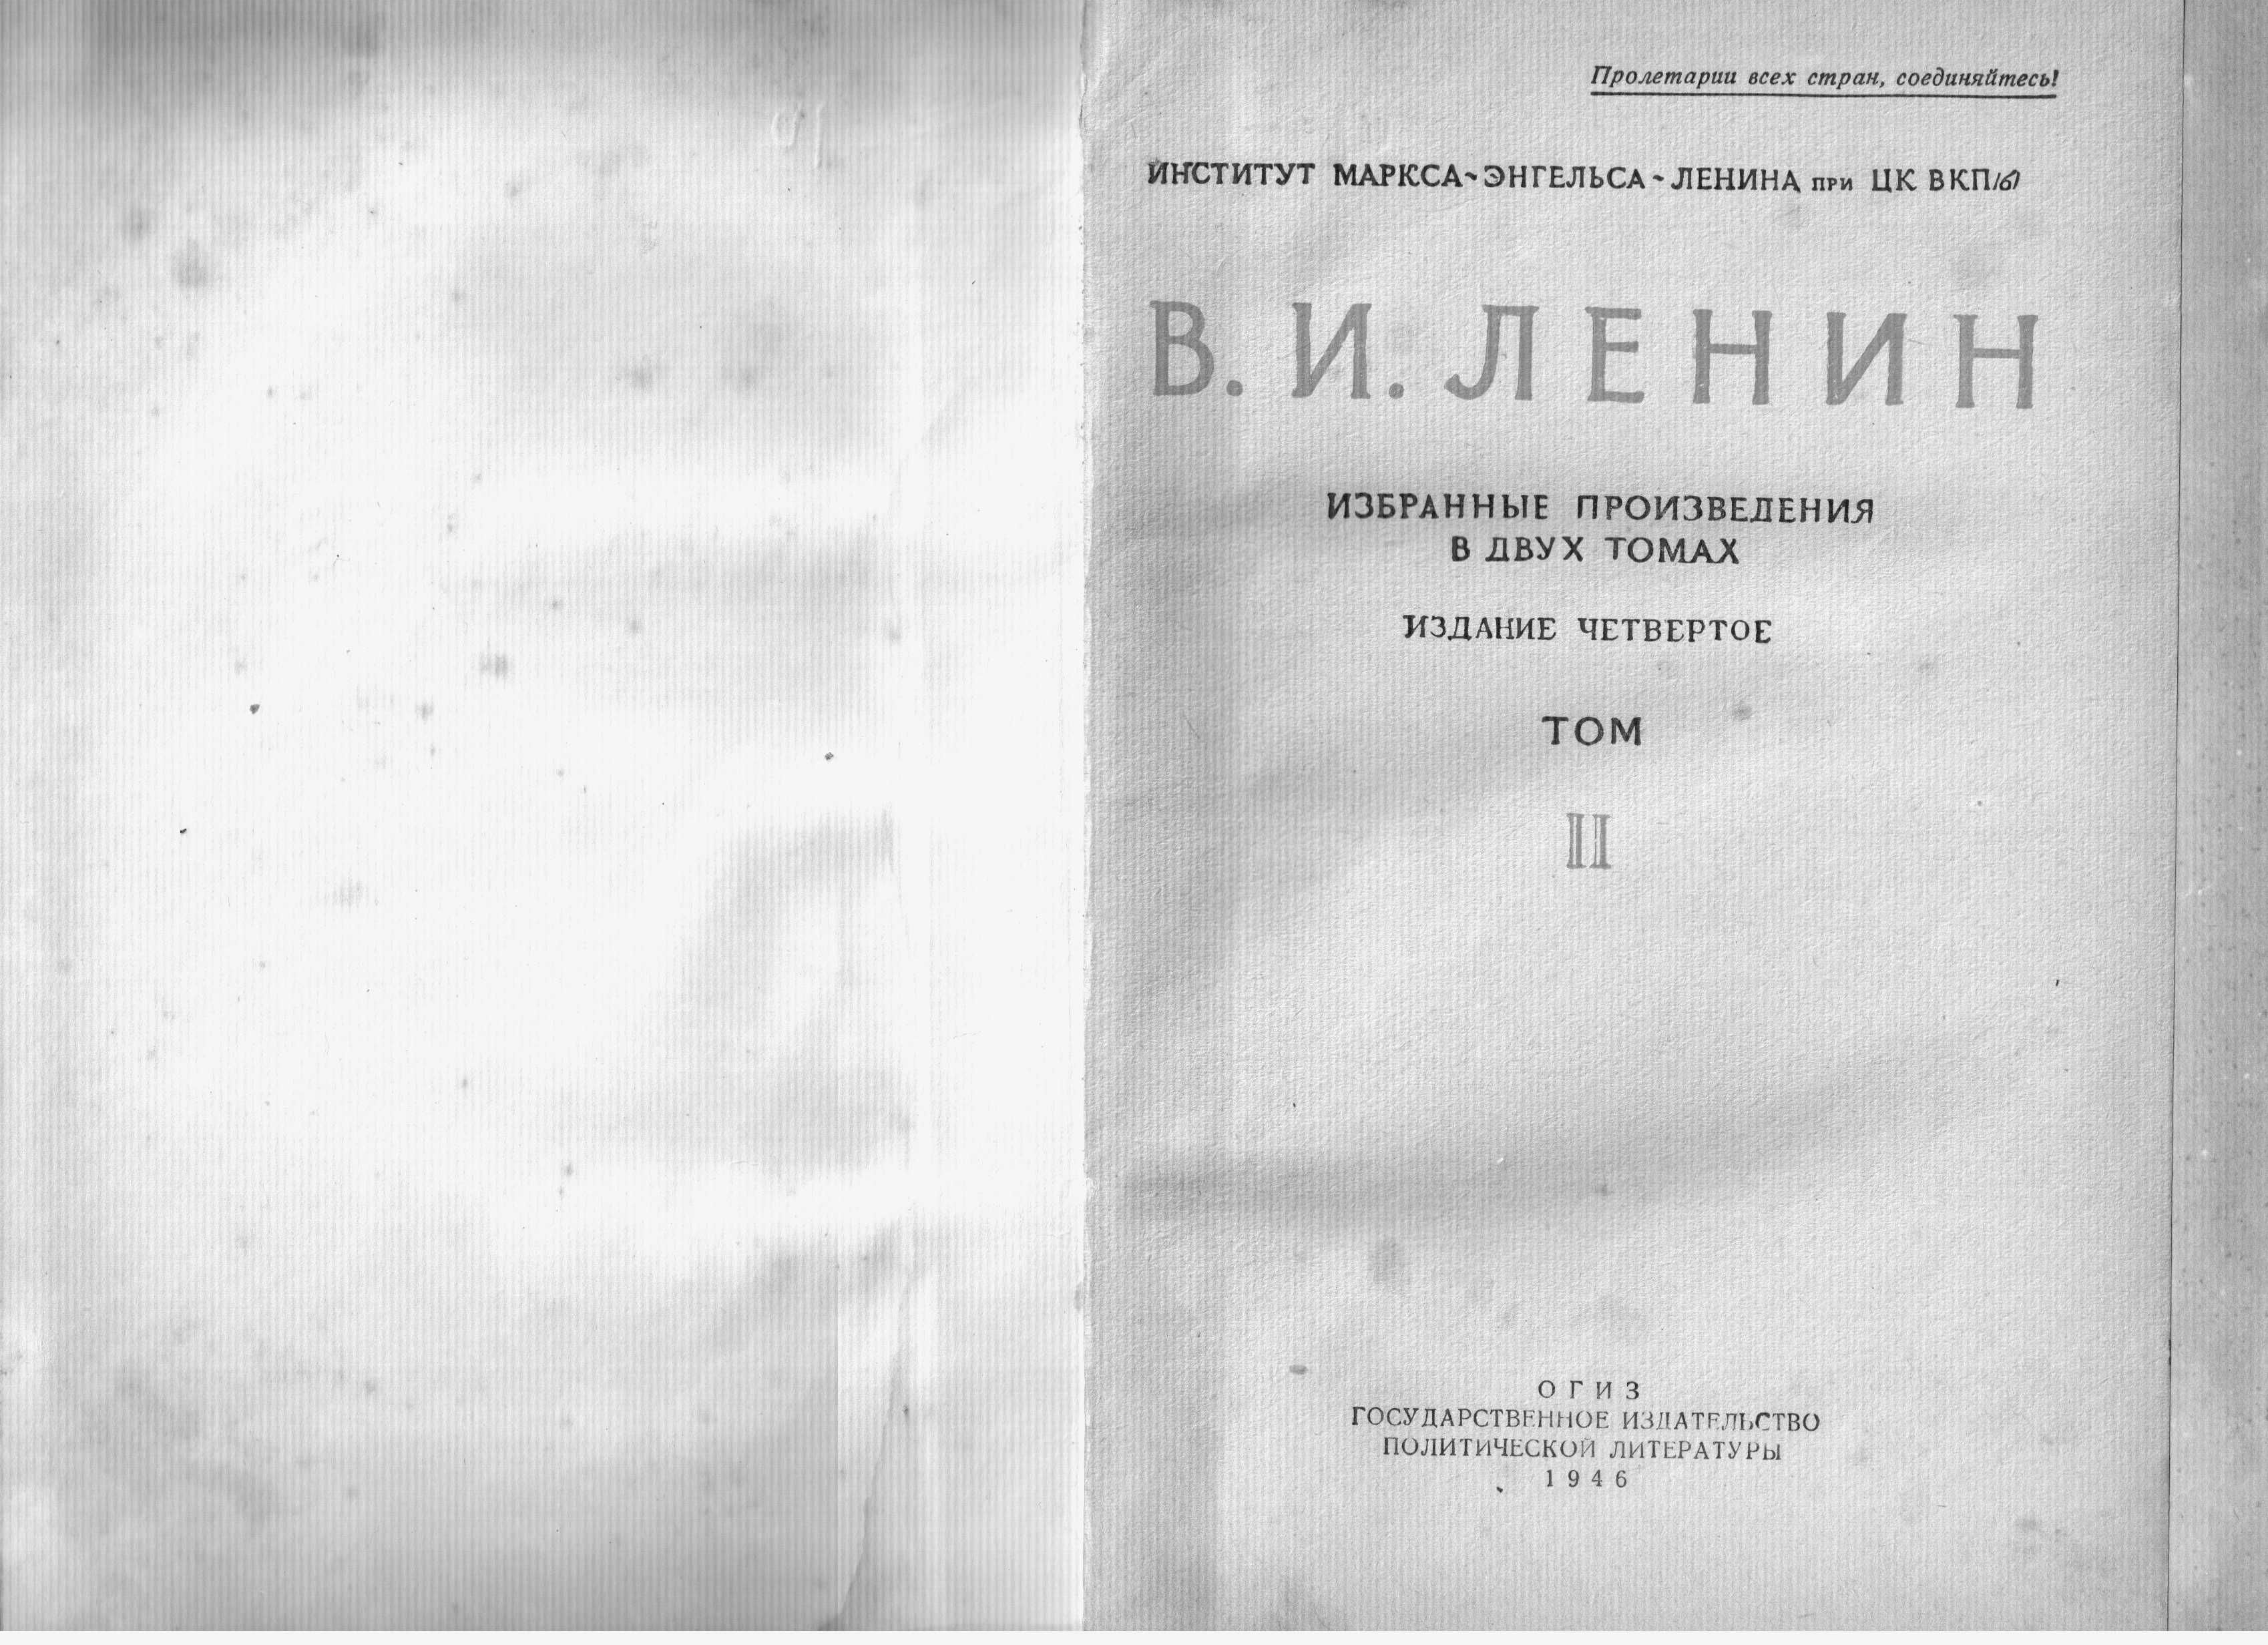 Ленин В.И. Избранные произведения в 2-х томах. Издание 4-е. М., 1946